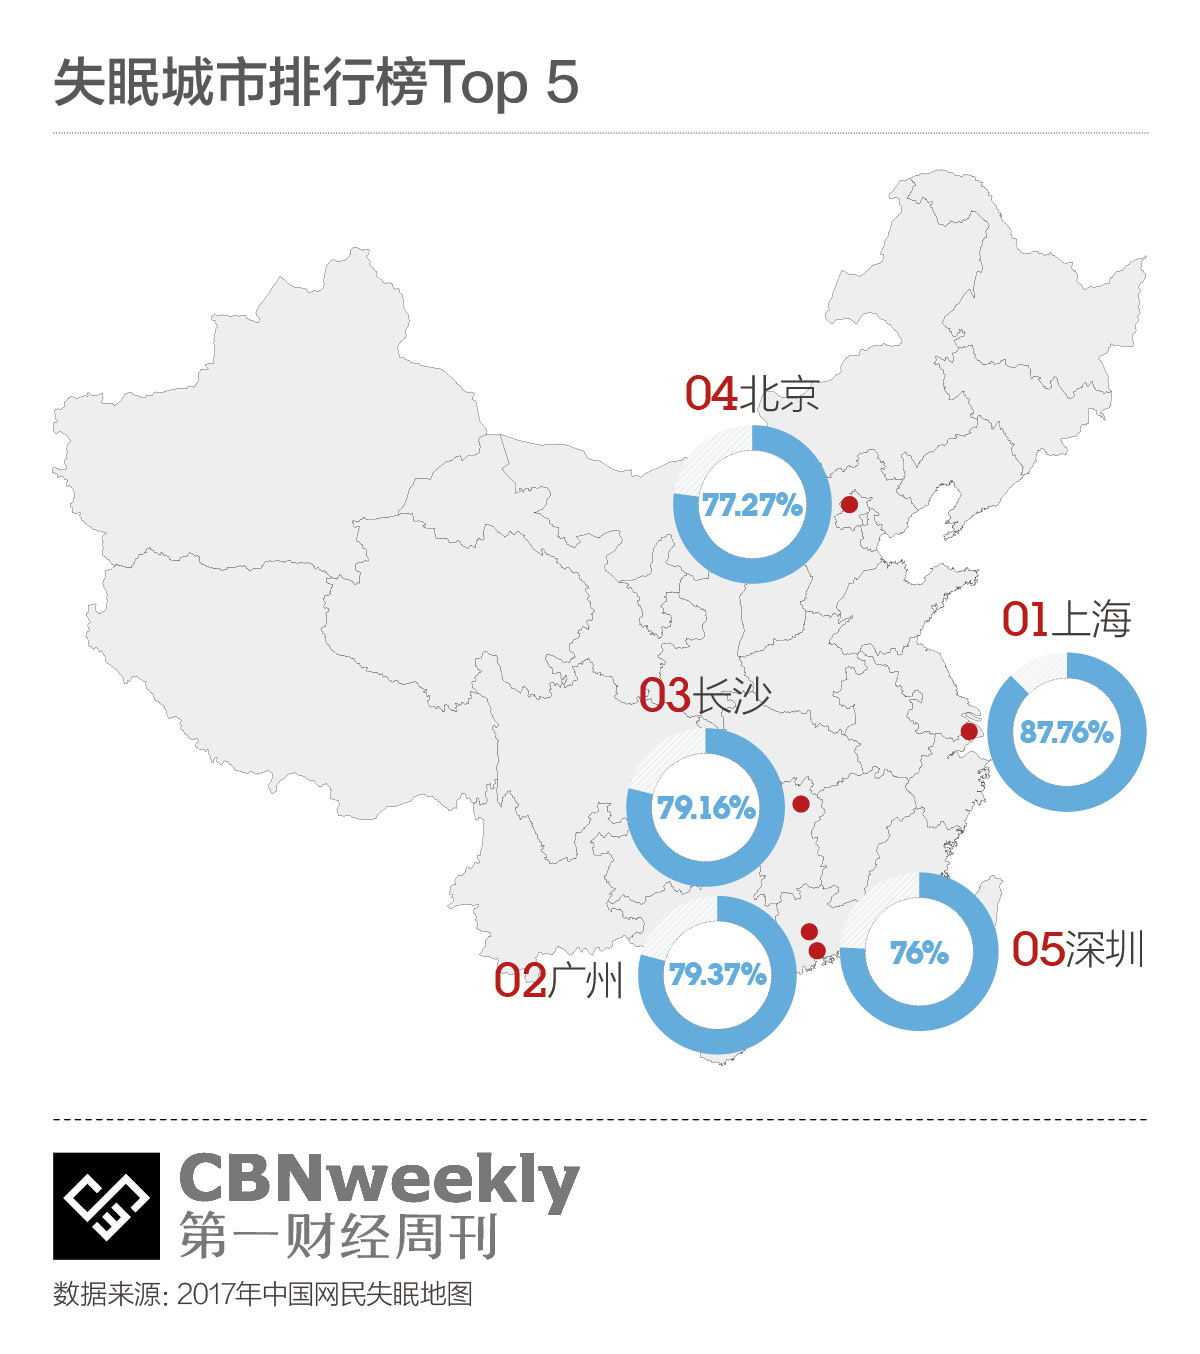 中国网民失眠地图发布:上海居首位北京排